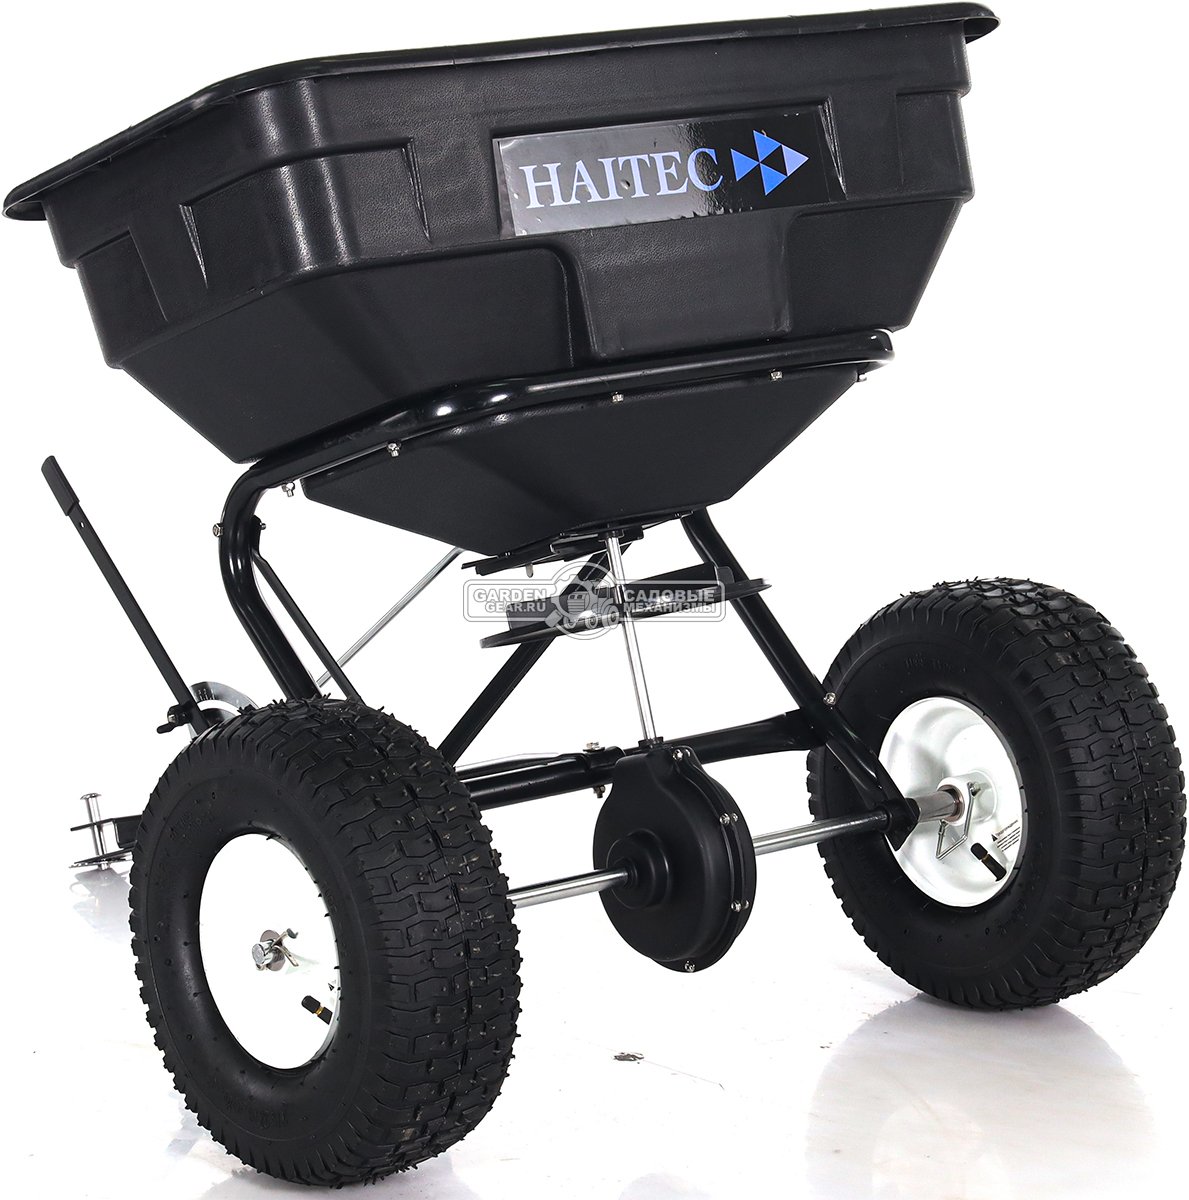 Разбрасыватель удобрений и песка Haitec HT-GS56B 56 кг, ширина разброса 300-365 см. для всех садовых минитракторов